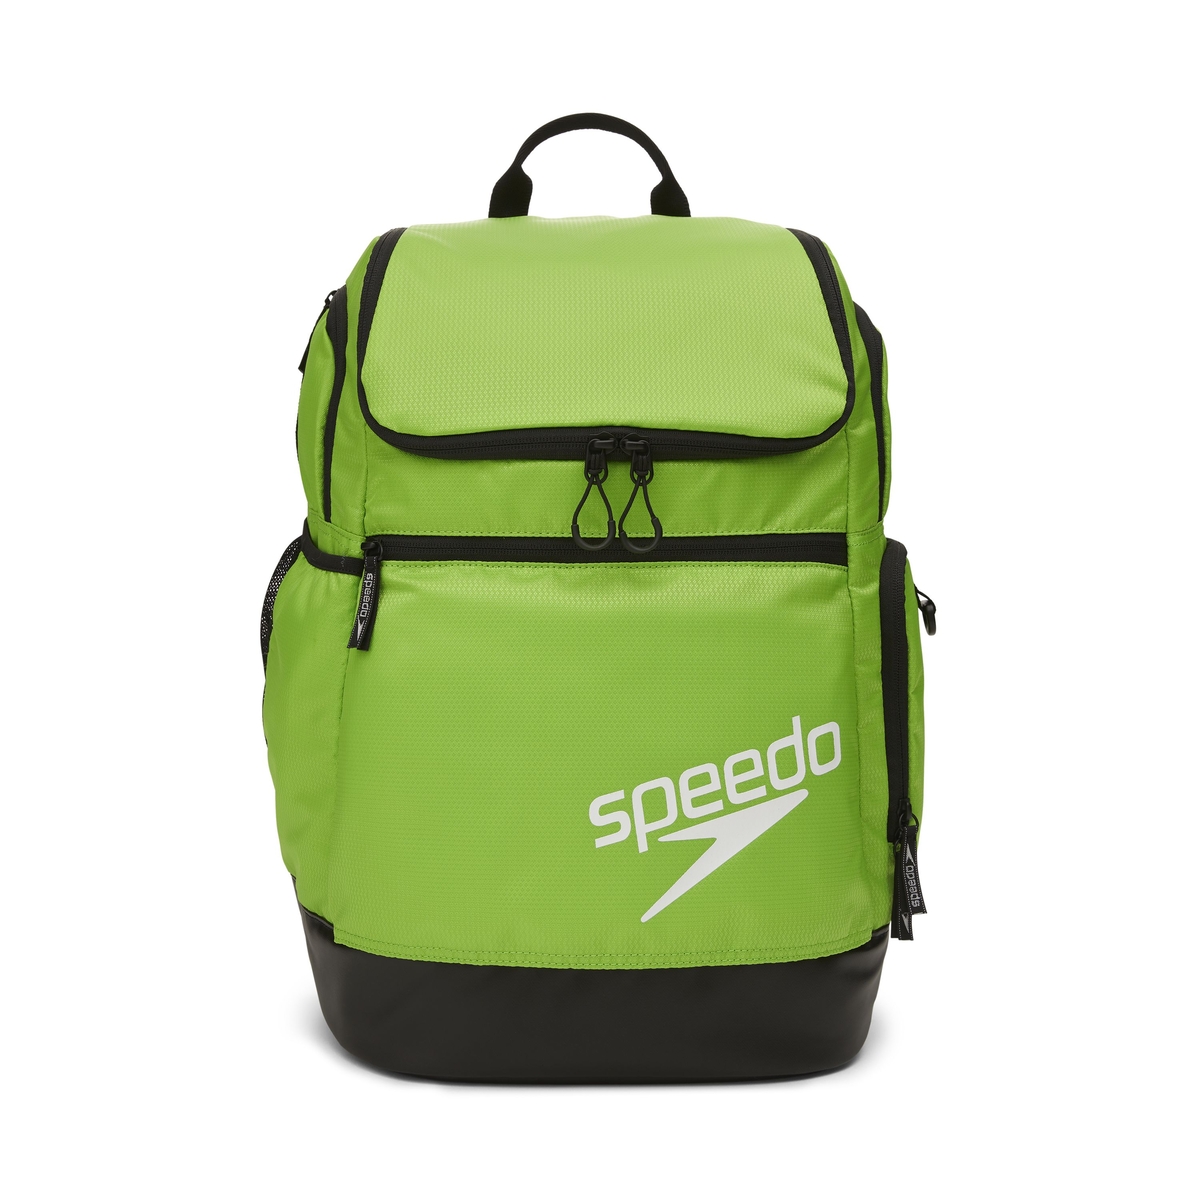 Speedo Deluxe Ventilator Mesh Bag at SwimOutlet.com